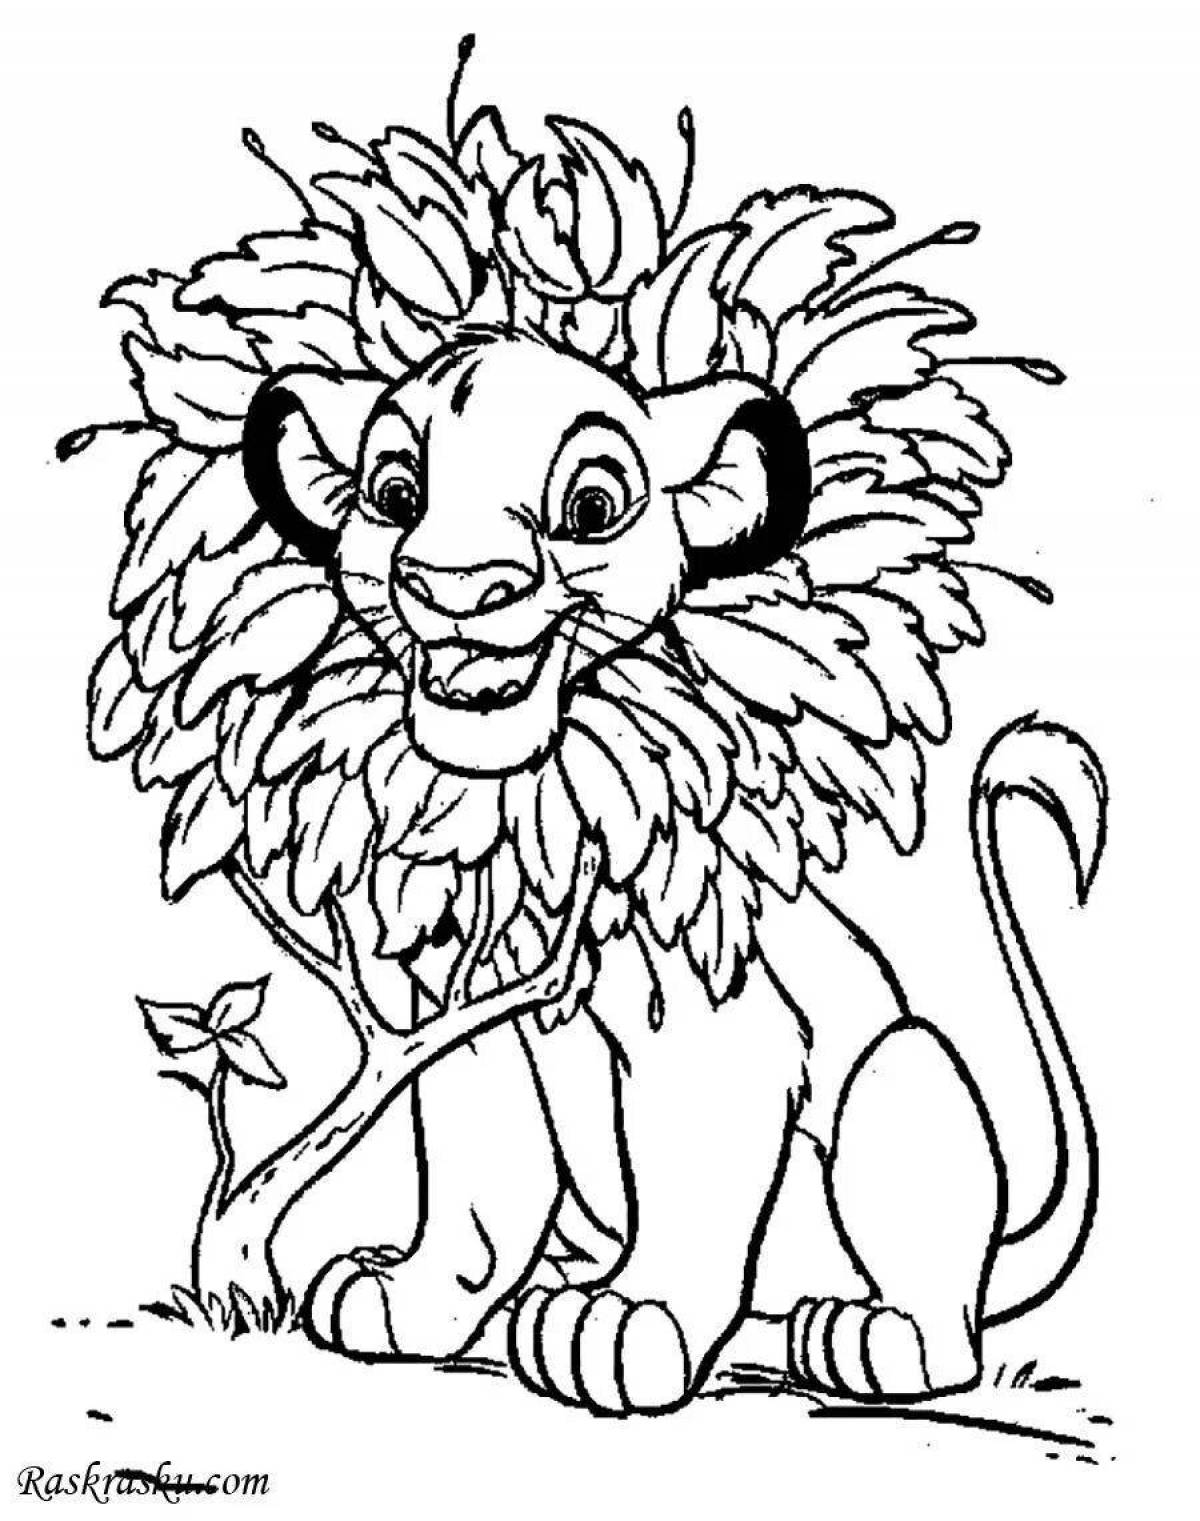 Coloring page gentle lion cub